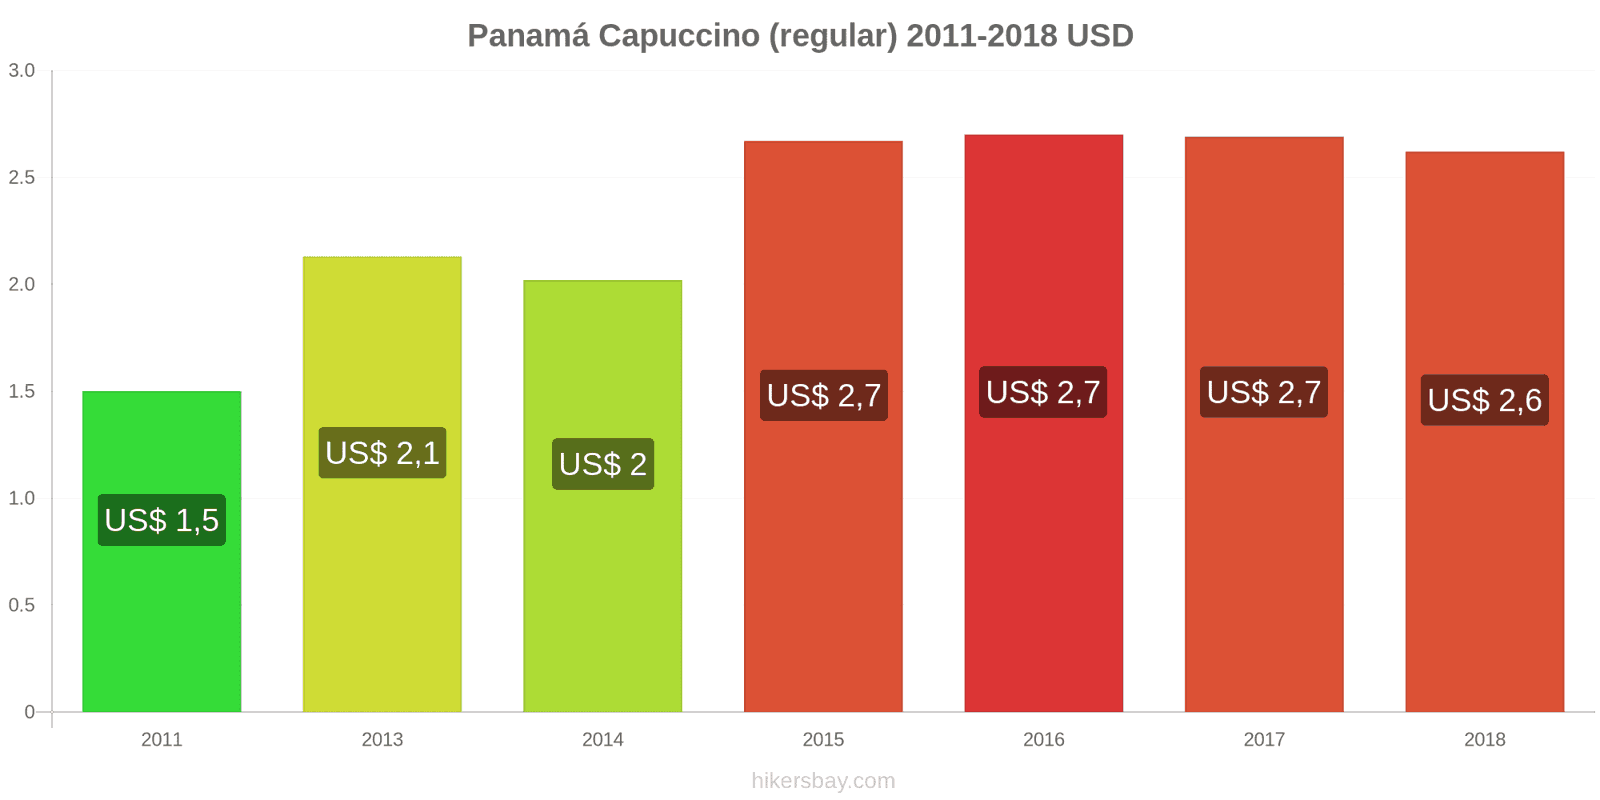 Panamá mudanças de preços Cappuccino hikersbay.com